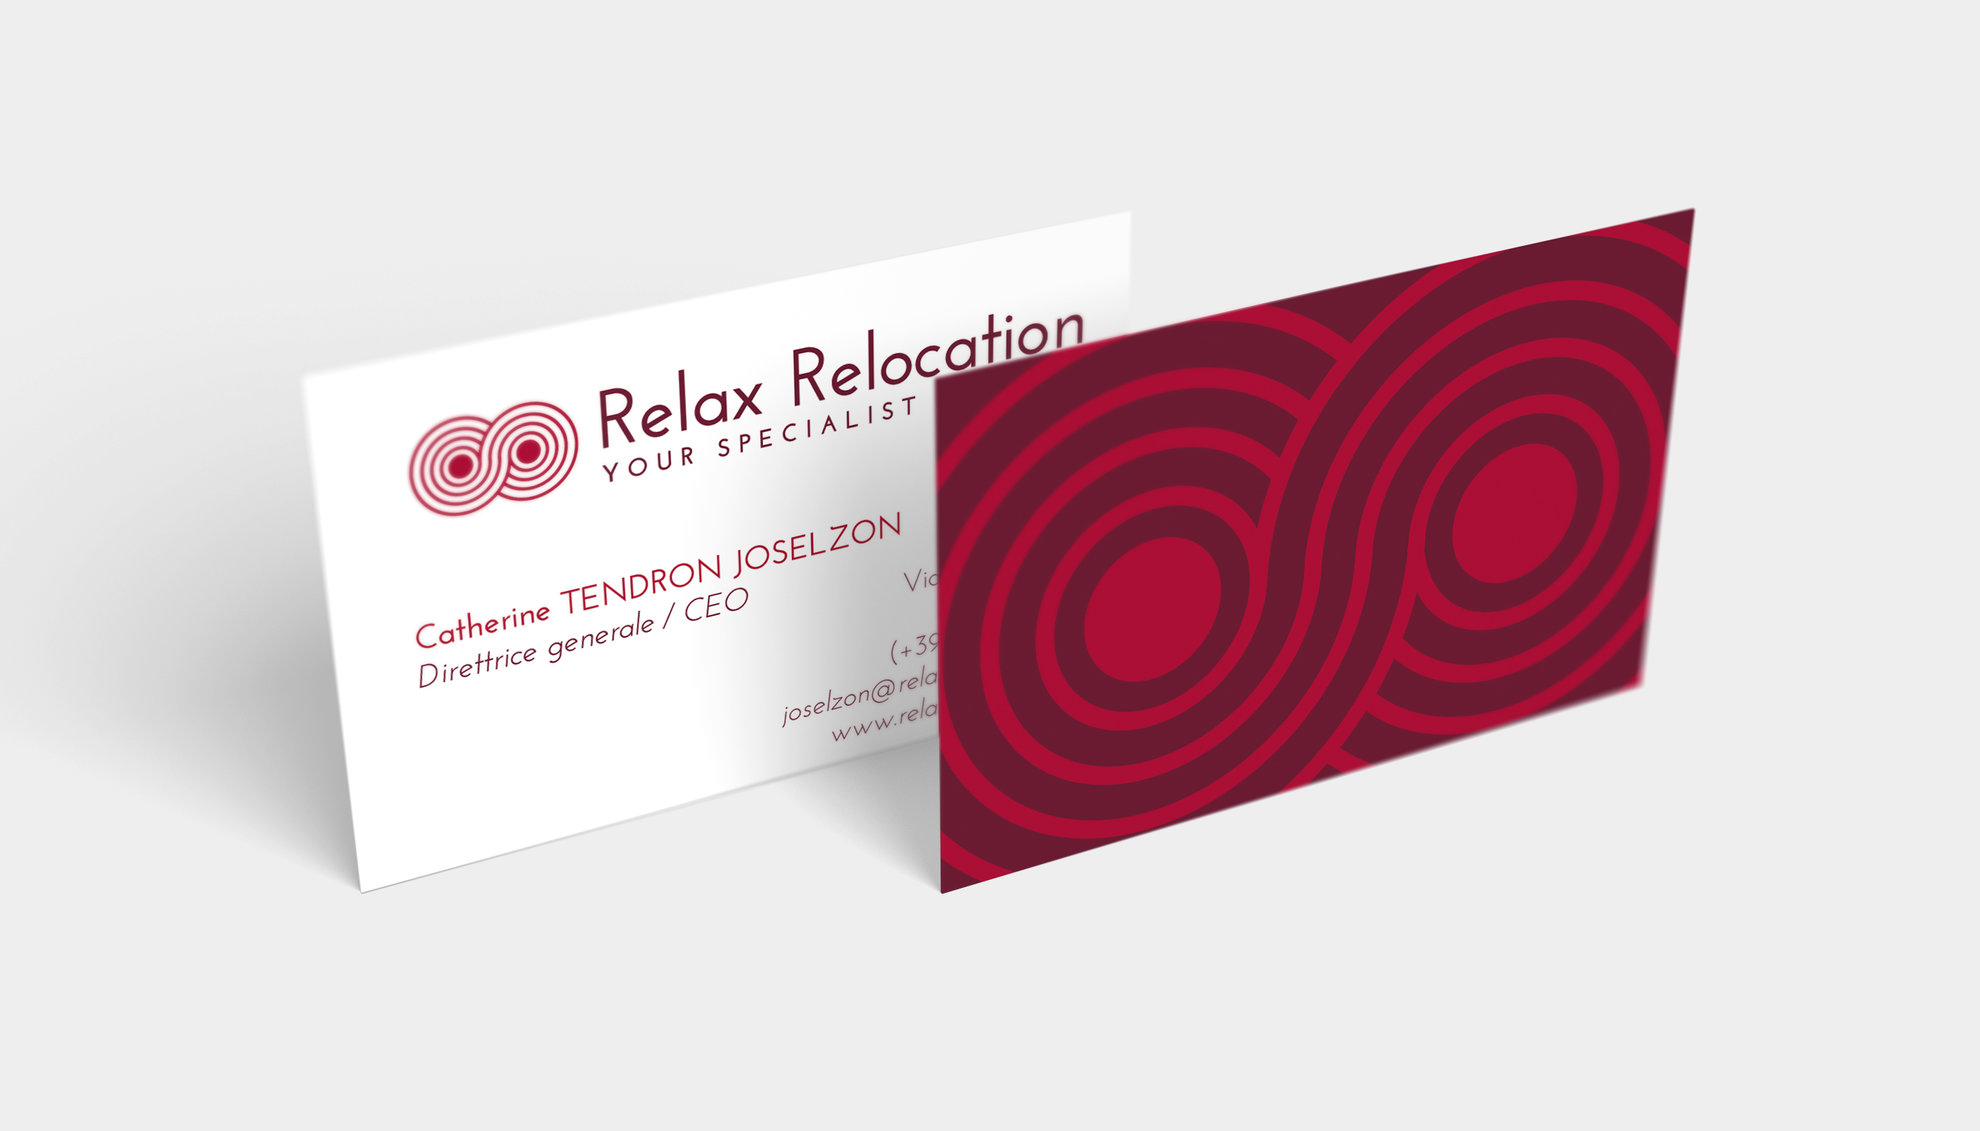 CV_Relax Relocation.jpg